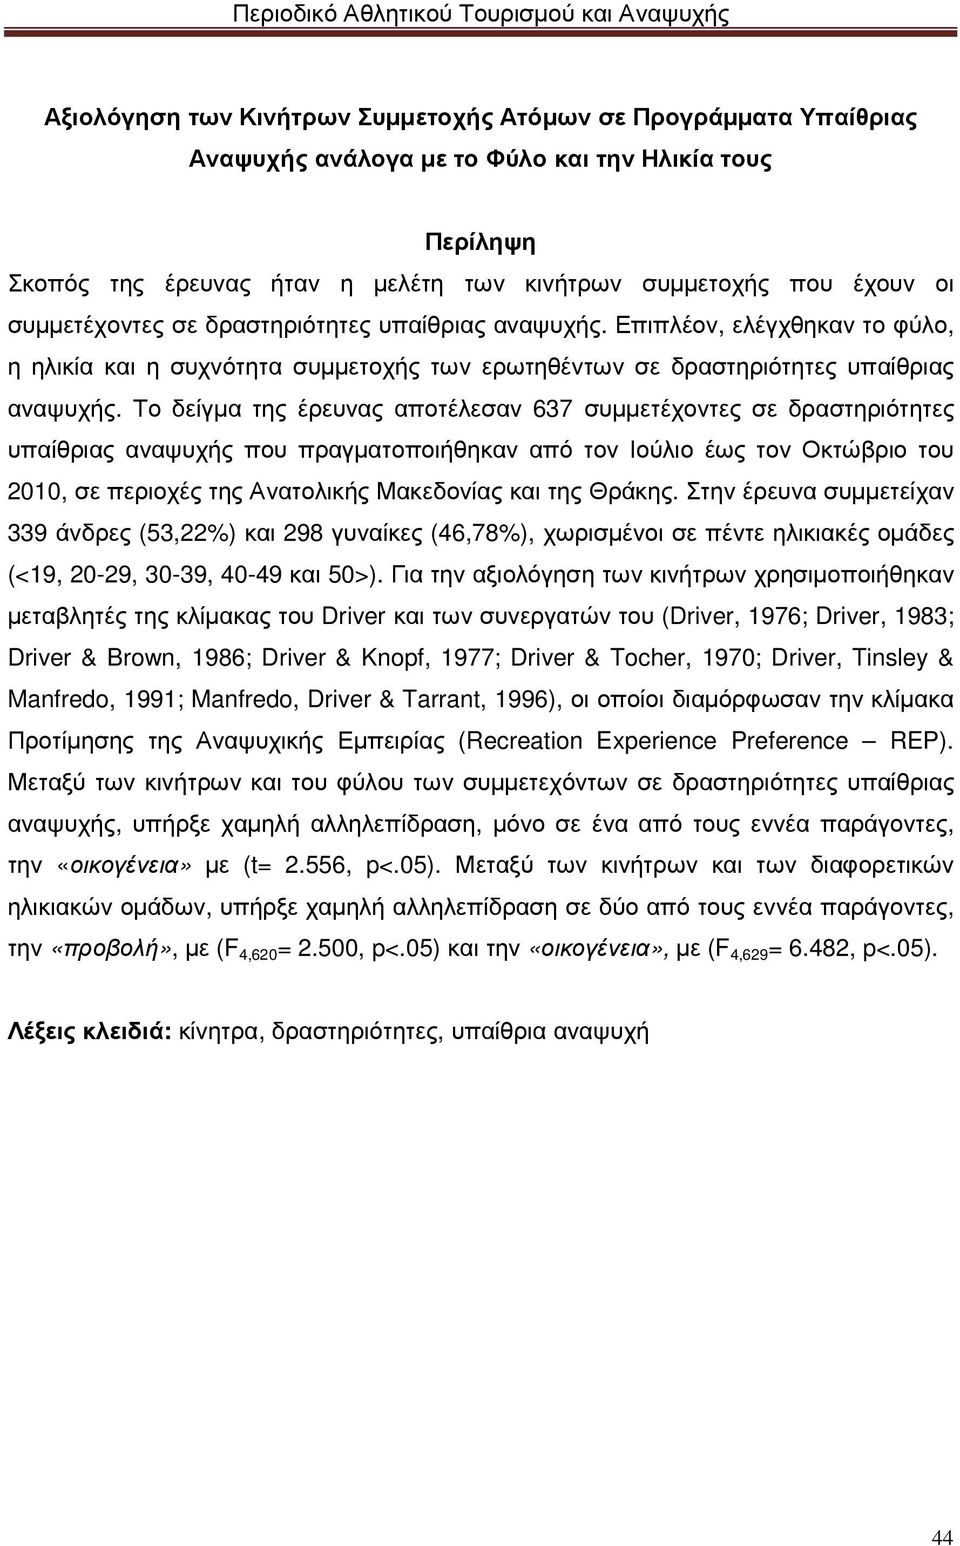 Το δείγµα της έρευνας αποτέλεσαν 637 συµµετέχοντες σε δραστηριότητες υπαίθριας αναψυχής που πραγµατοποιήθηκαν από τον Ιούλιο έως τον Οκτώβριο του 2010, σε περιοχές της Ανατολικής Μακεδονίας και της